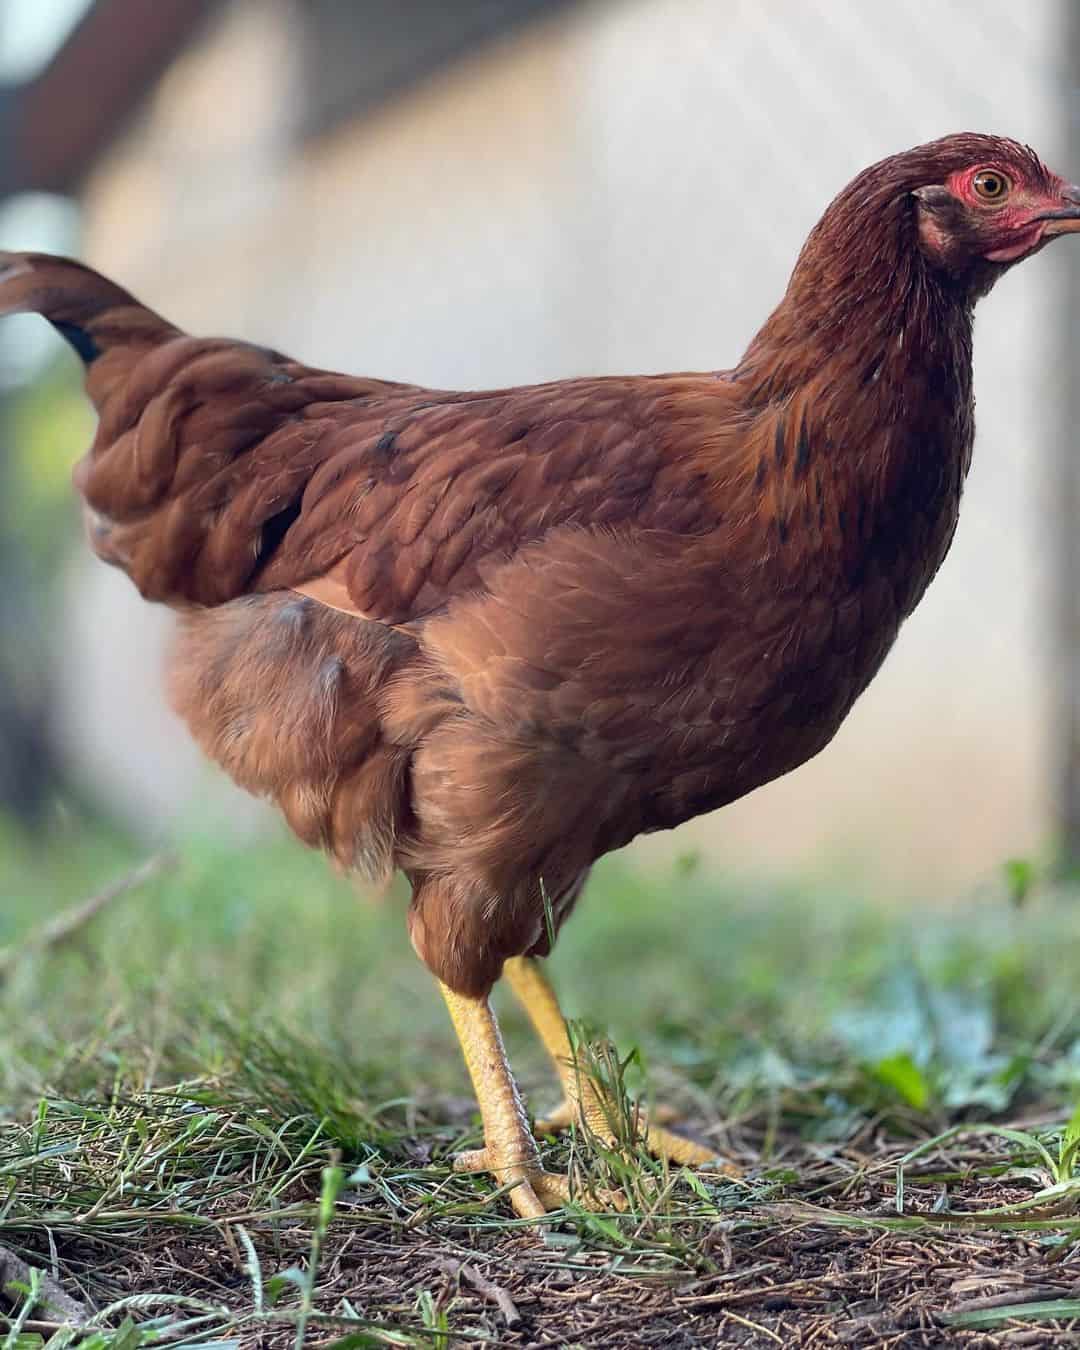 Are Cinnamon Queen chickens healthy?